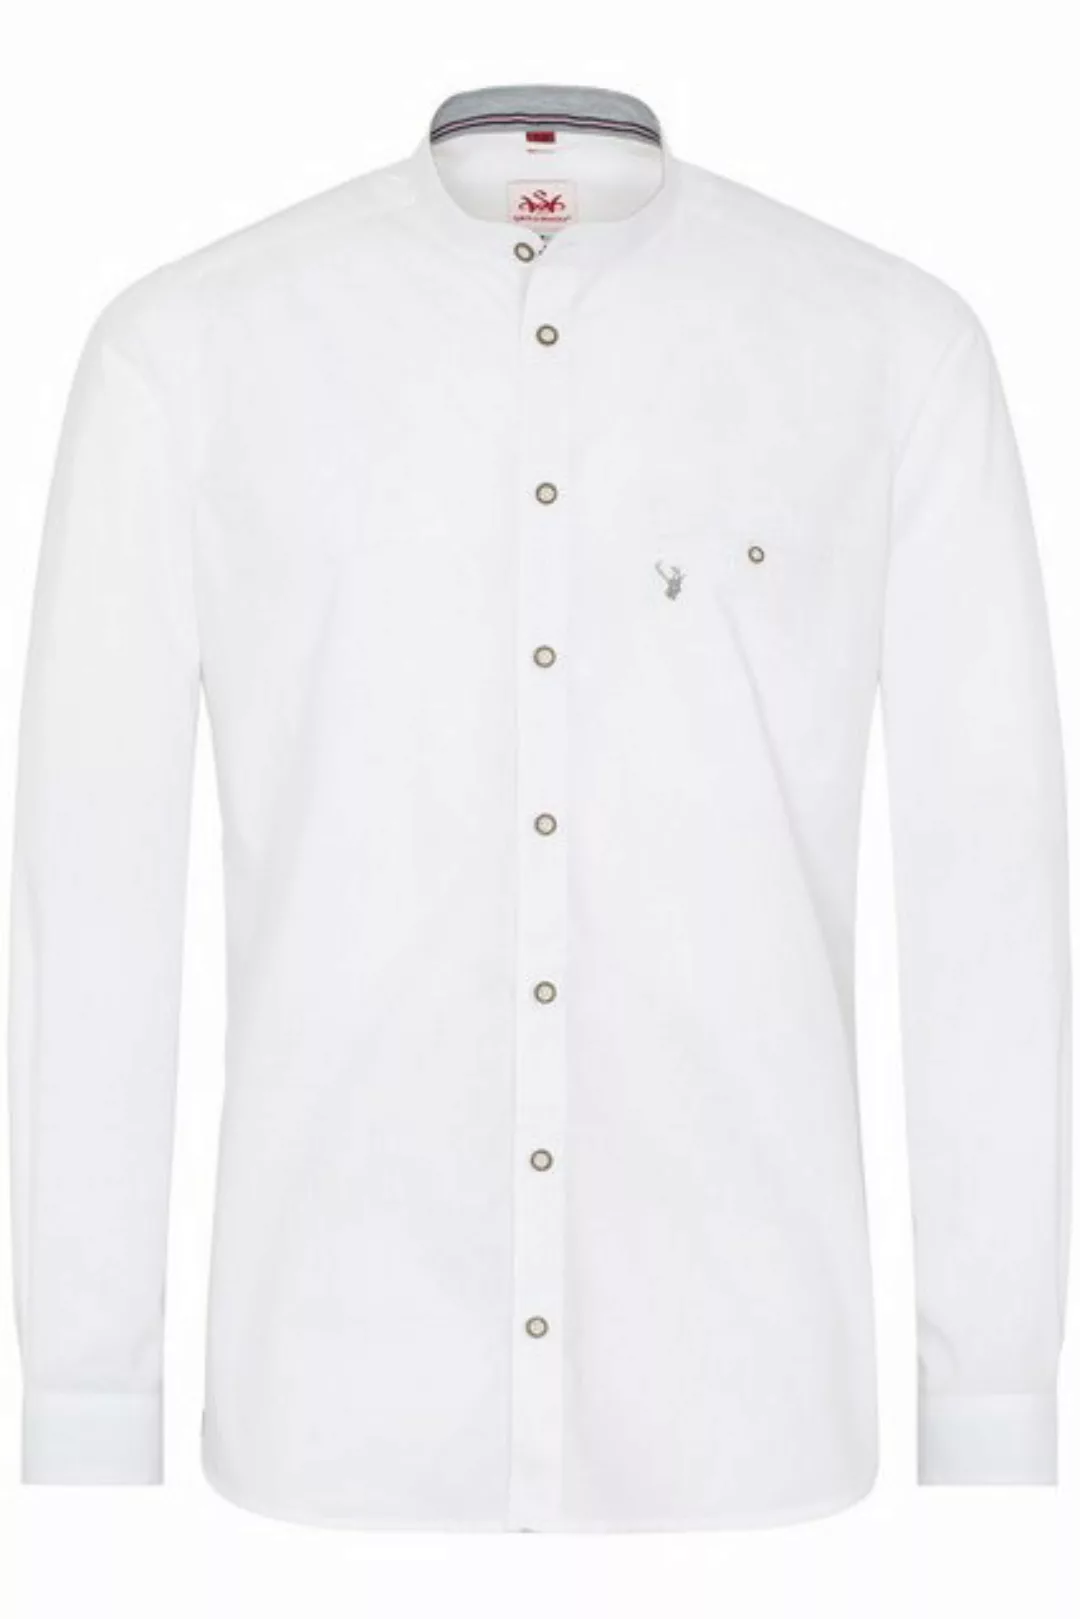 Spieth & Wensky Trachtenhemd Trachtenhemd - PHILON - weiß/hellblau, weiß/gr günstig online kaufen